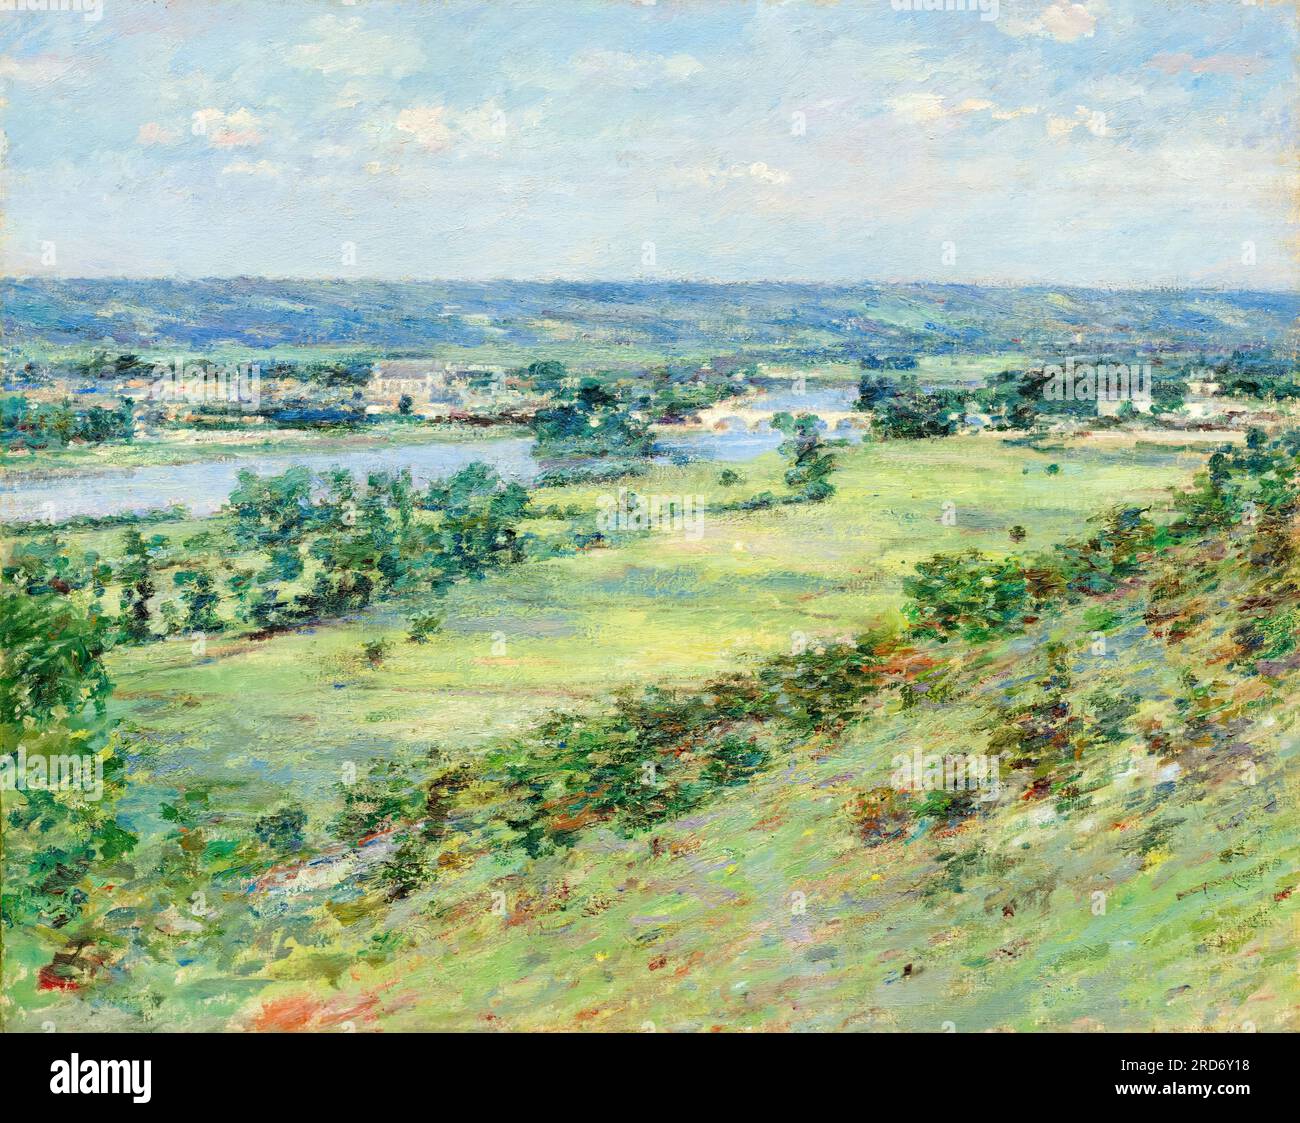 Théodore Robinson, la Vallée de la Seine depuis les collines de Giverny, peinture de paysage à l'huile sur toile, 1892 Banque D'Images